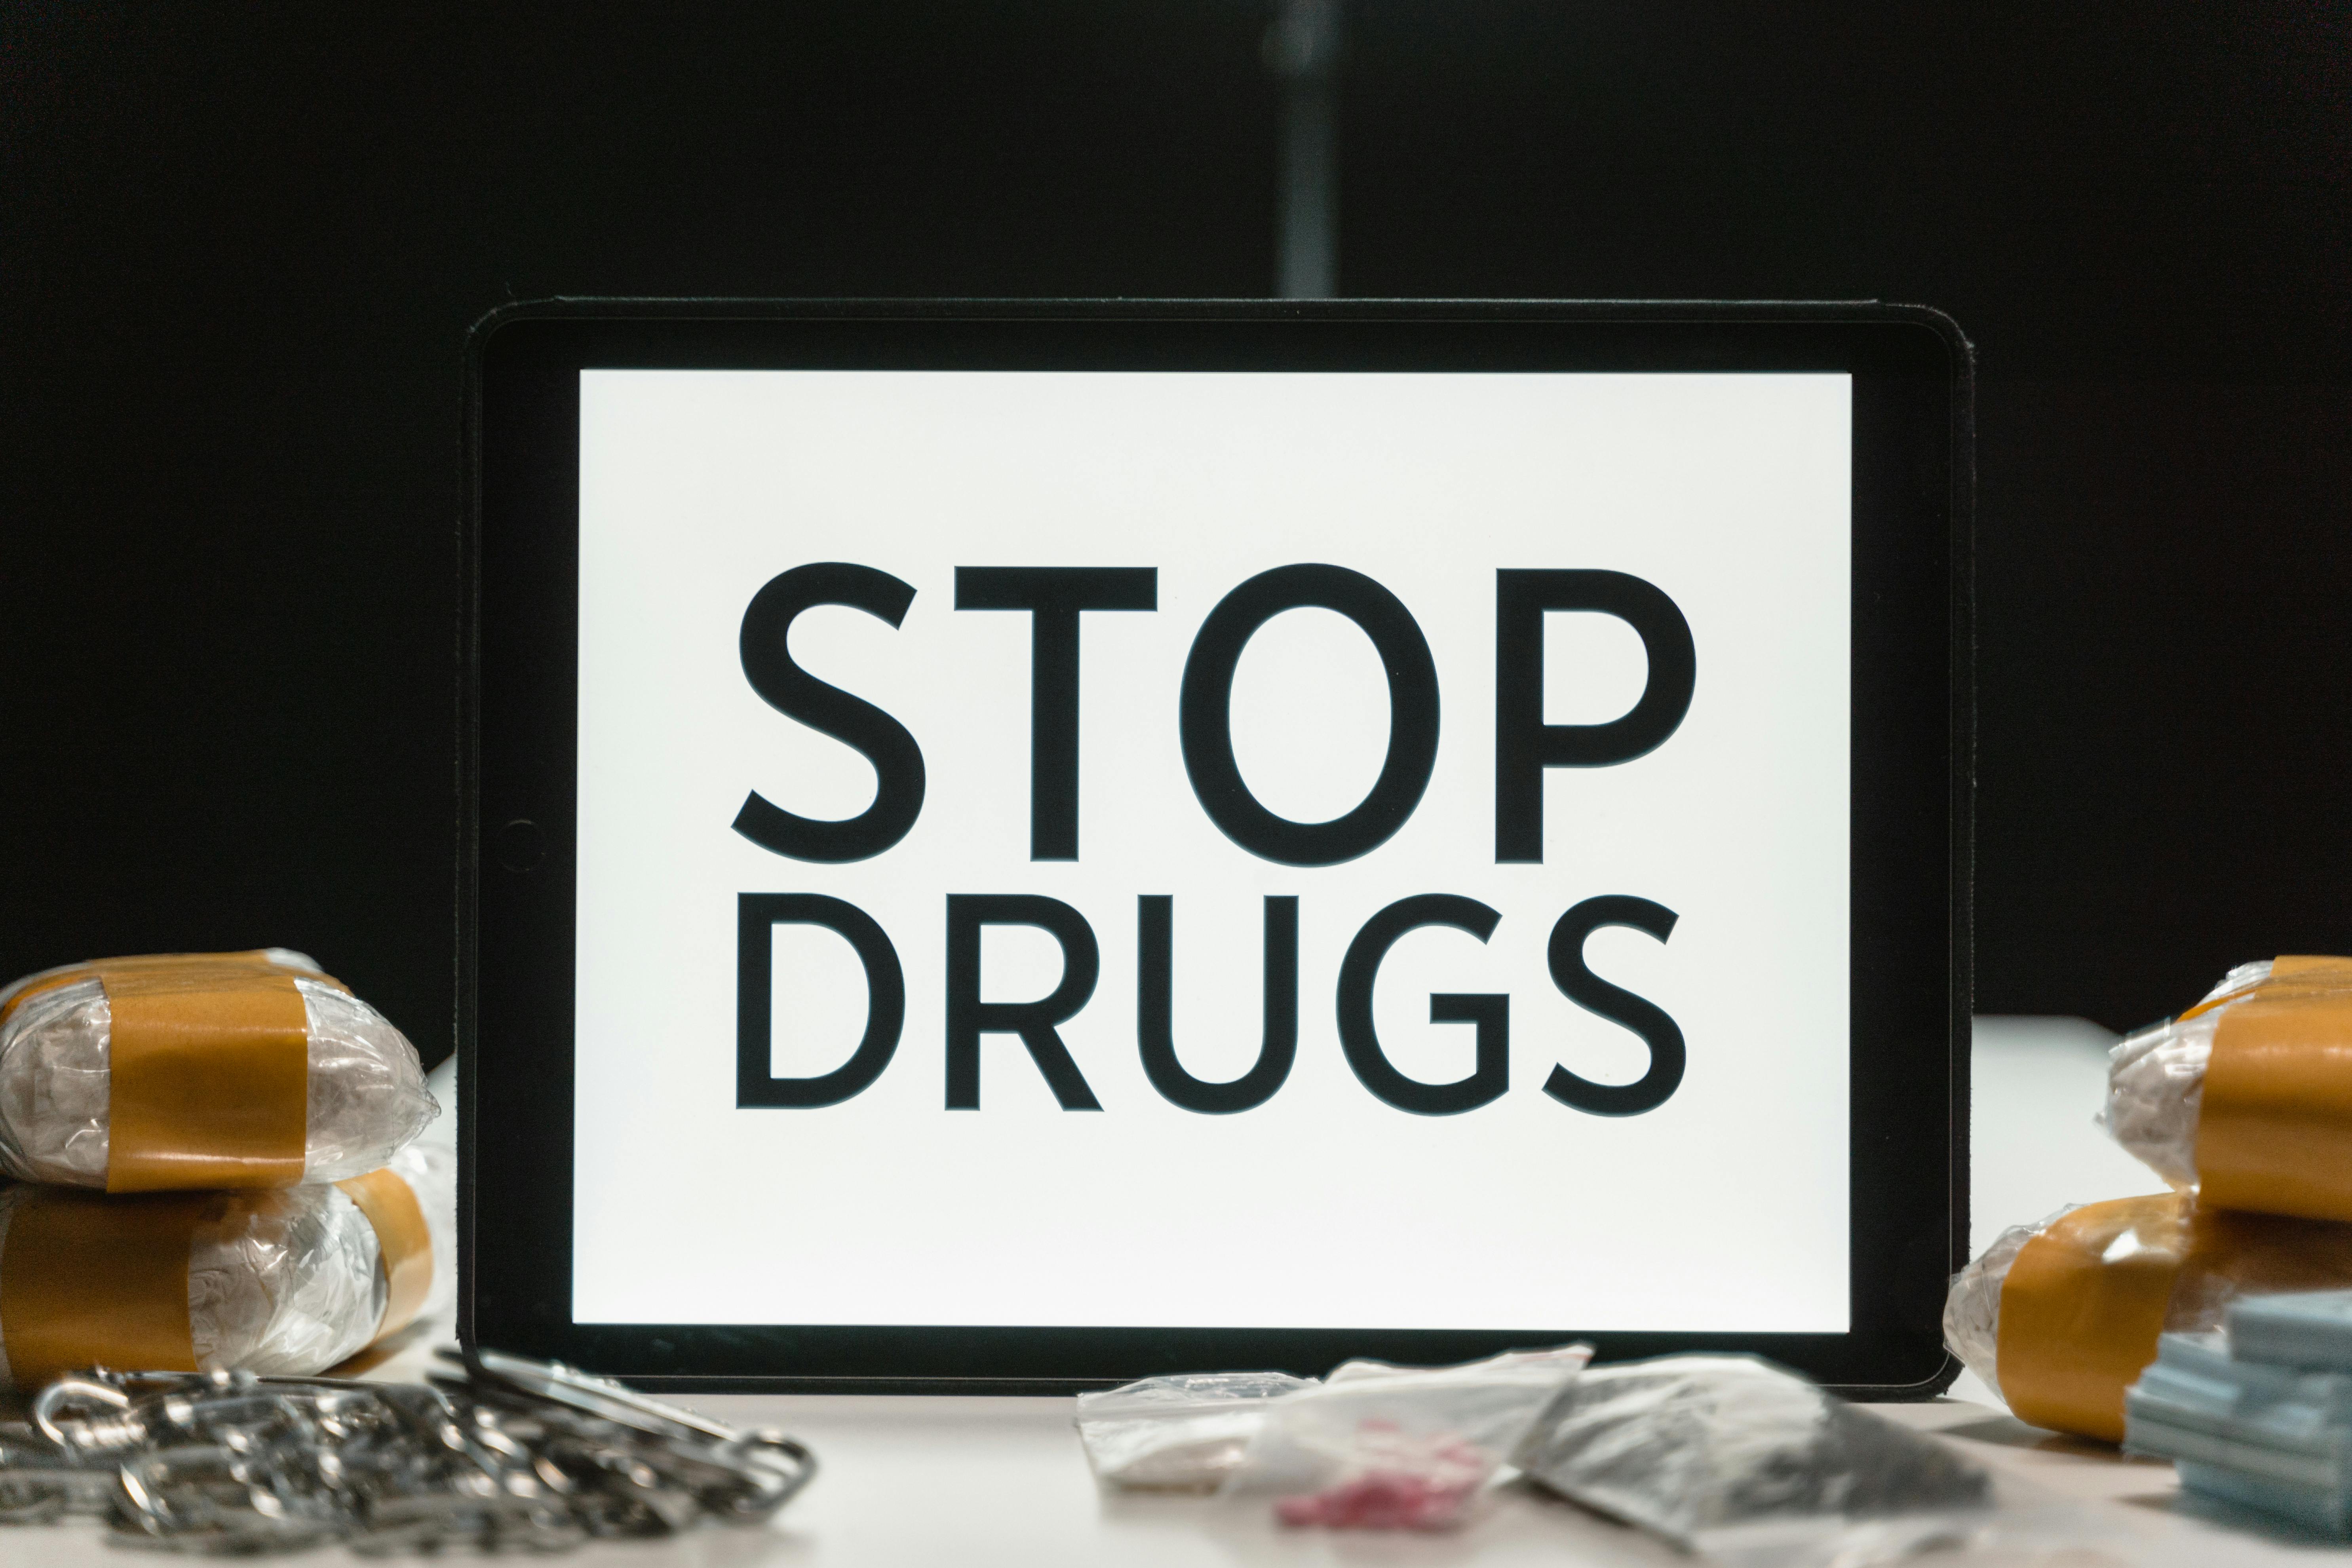 Transparentní testování na drogy: Ochrana zaměstnanců a firemních hodnot